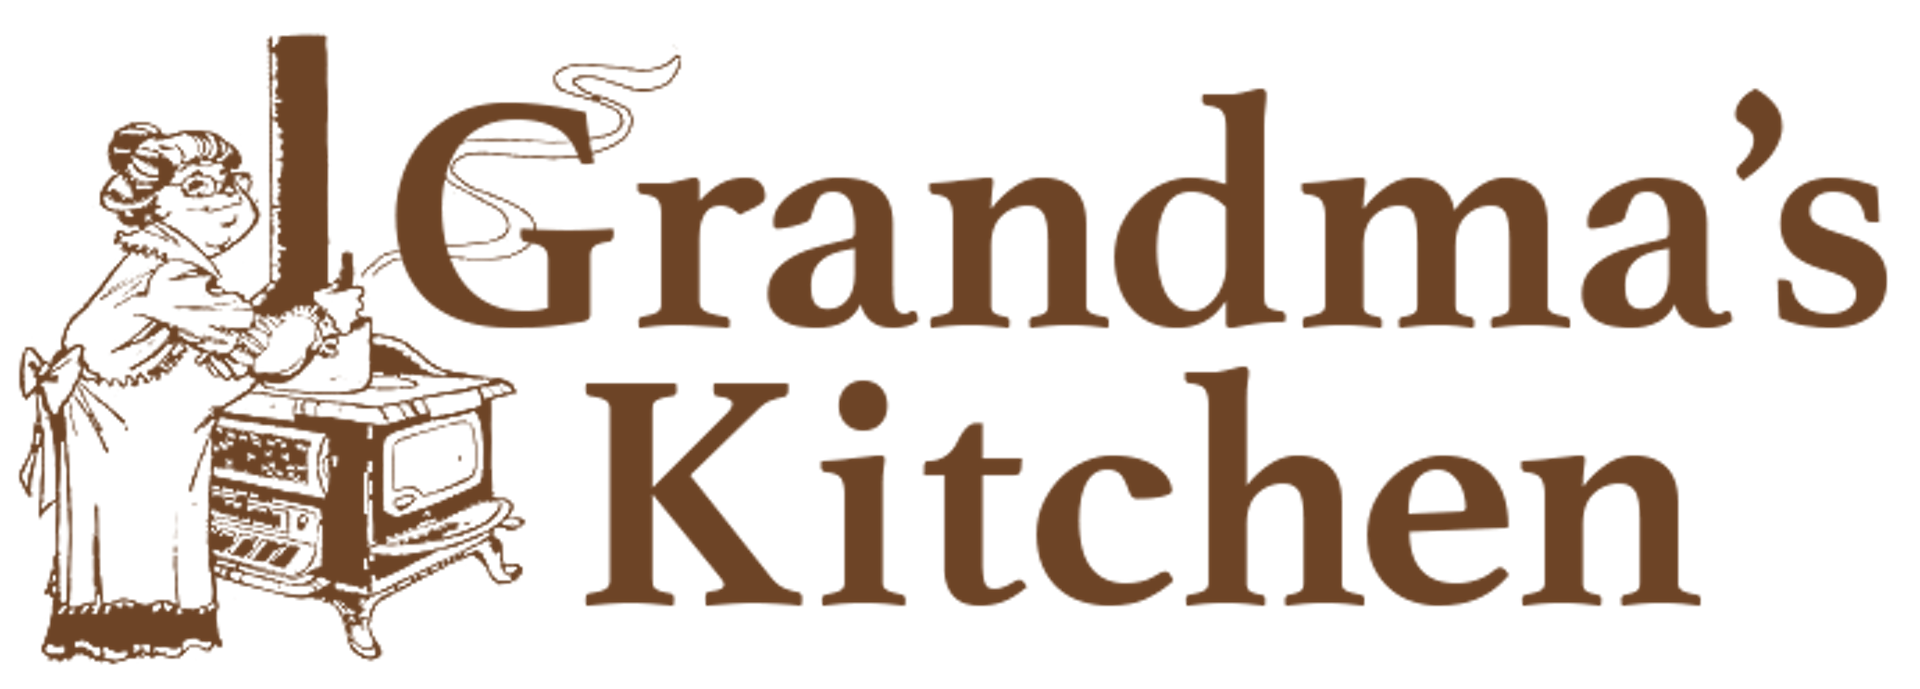 Grandma's Kitchen by D Hackett